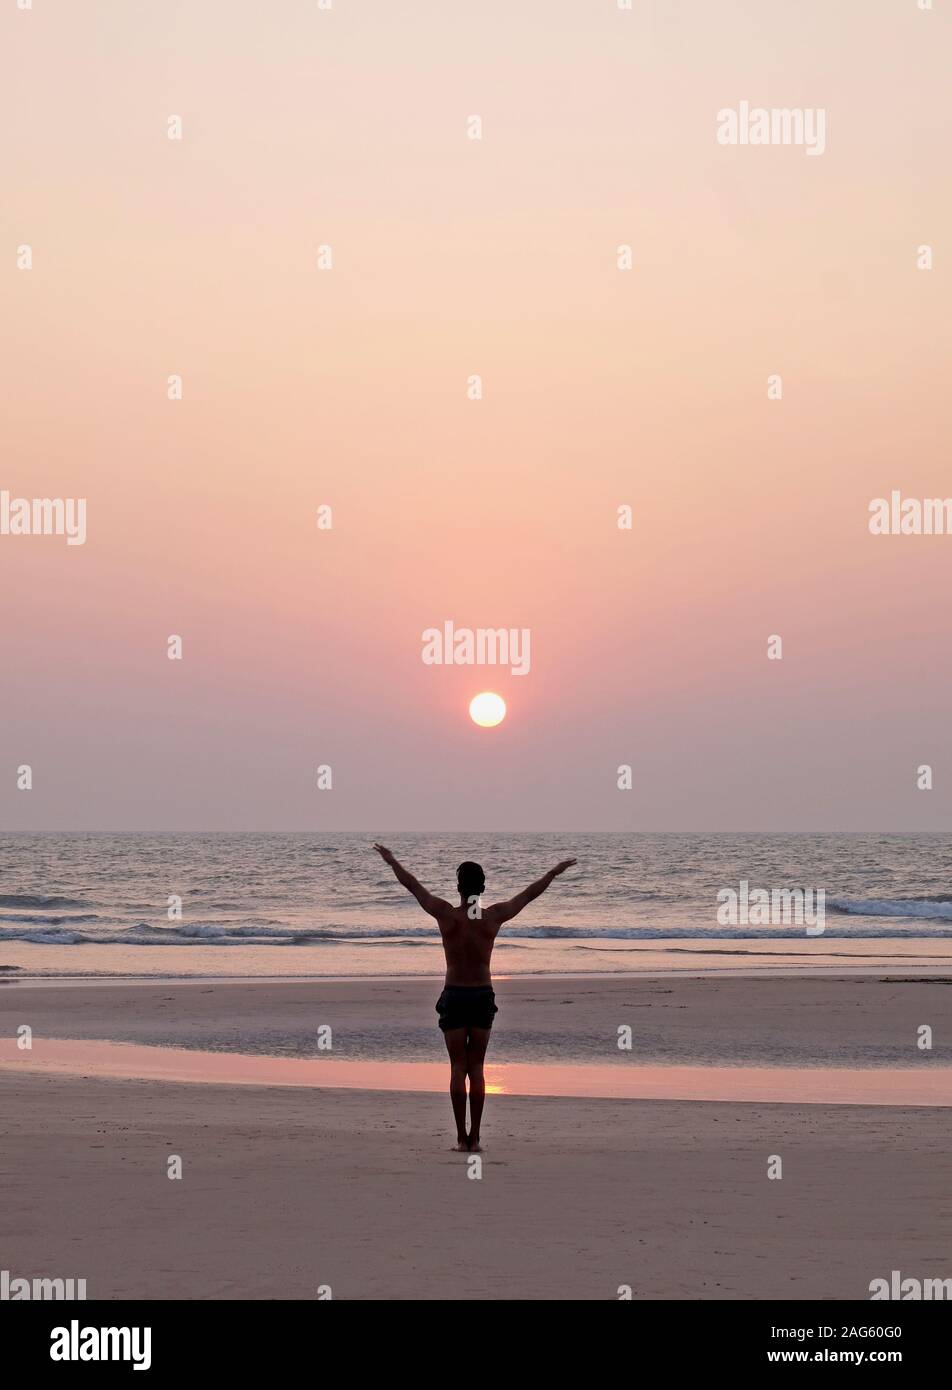 Un hombre irreconocible haciendo una pose de yoga, saludo al sol en una amplia playa de arena vacío abierto, él está de pie con sus brazos extendidos, él está bordeada de u Foto de stock